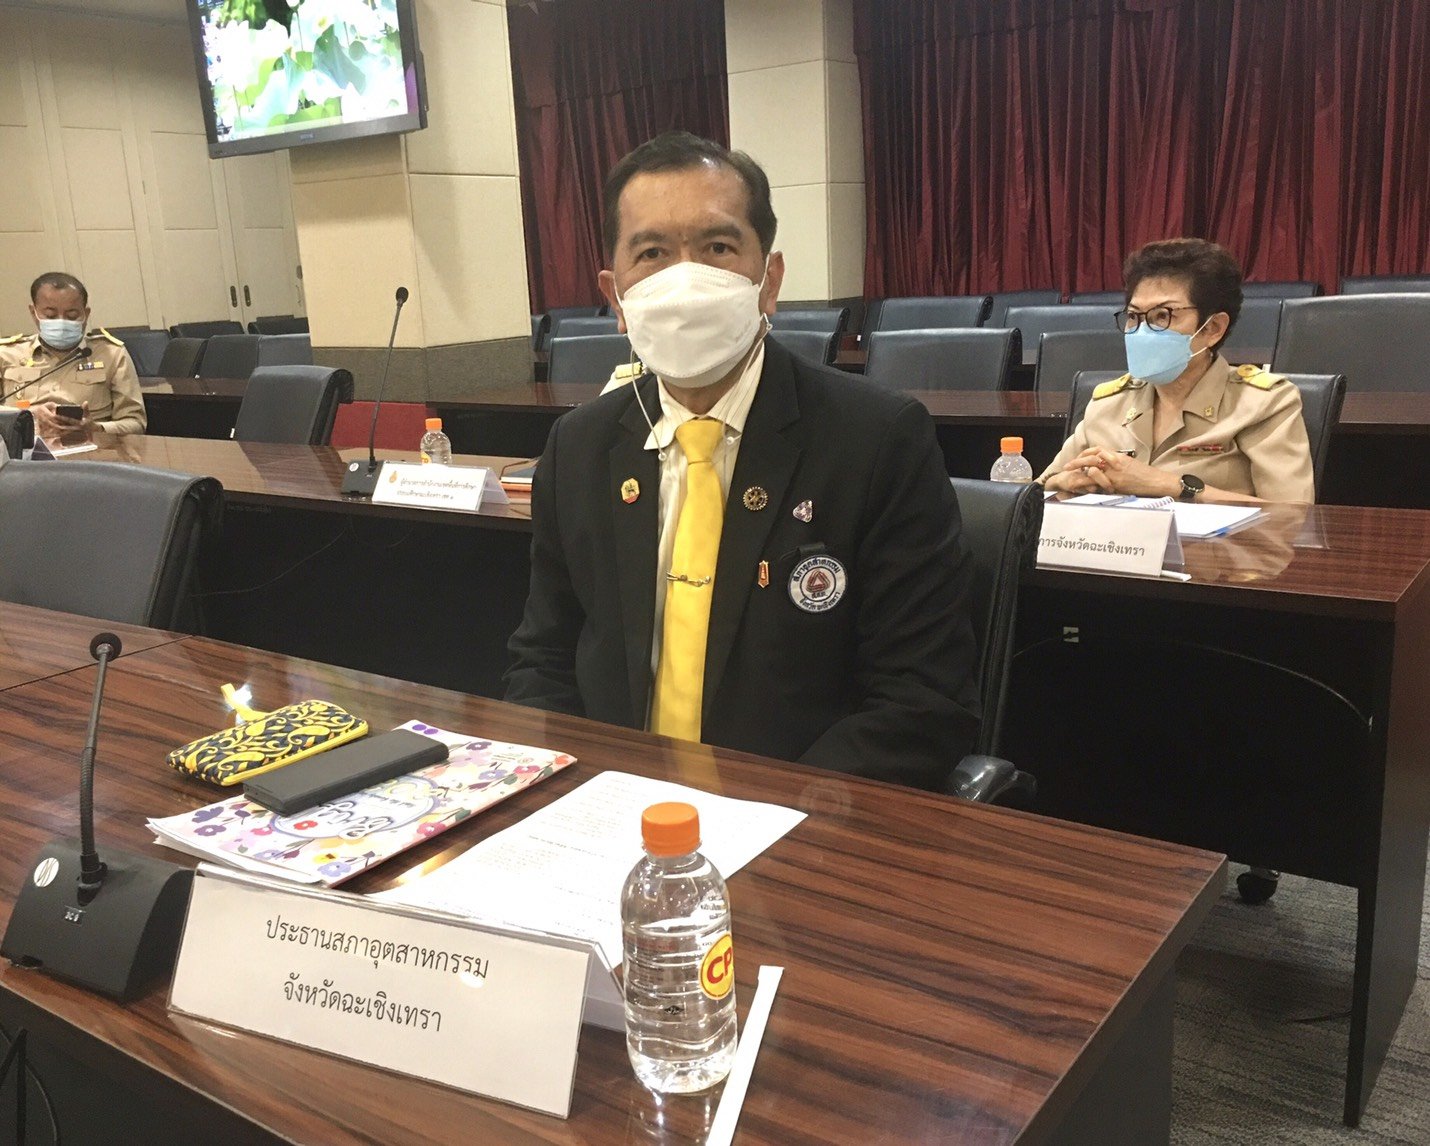 ประชุมคณะกรรมการโรคติดต่อจังหวัดฉะเชิงเทรา ครั้งที่ 37/2564 